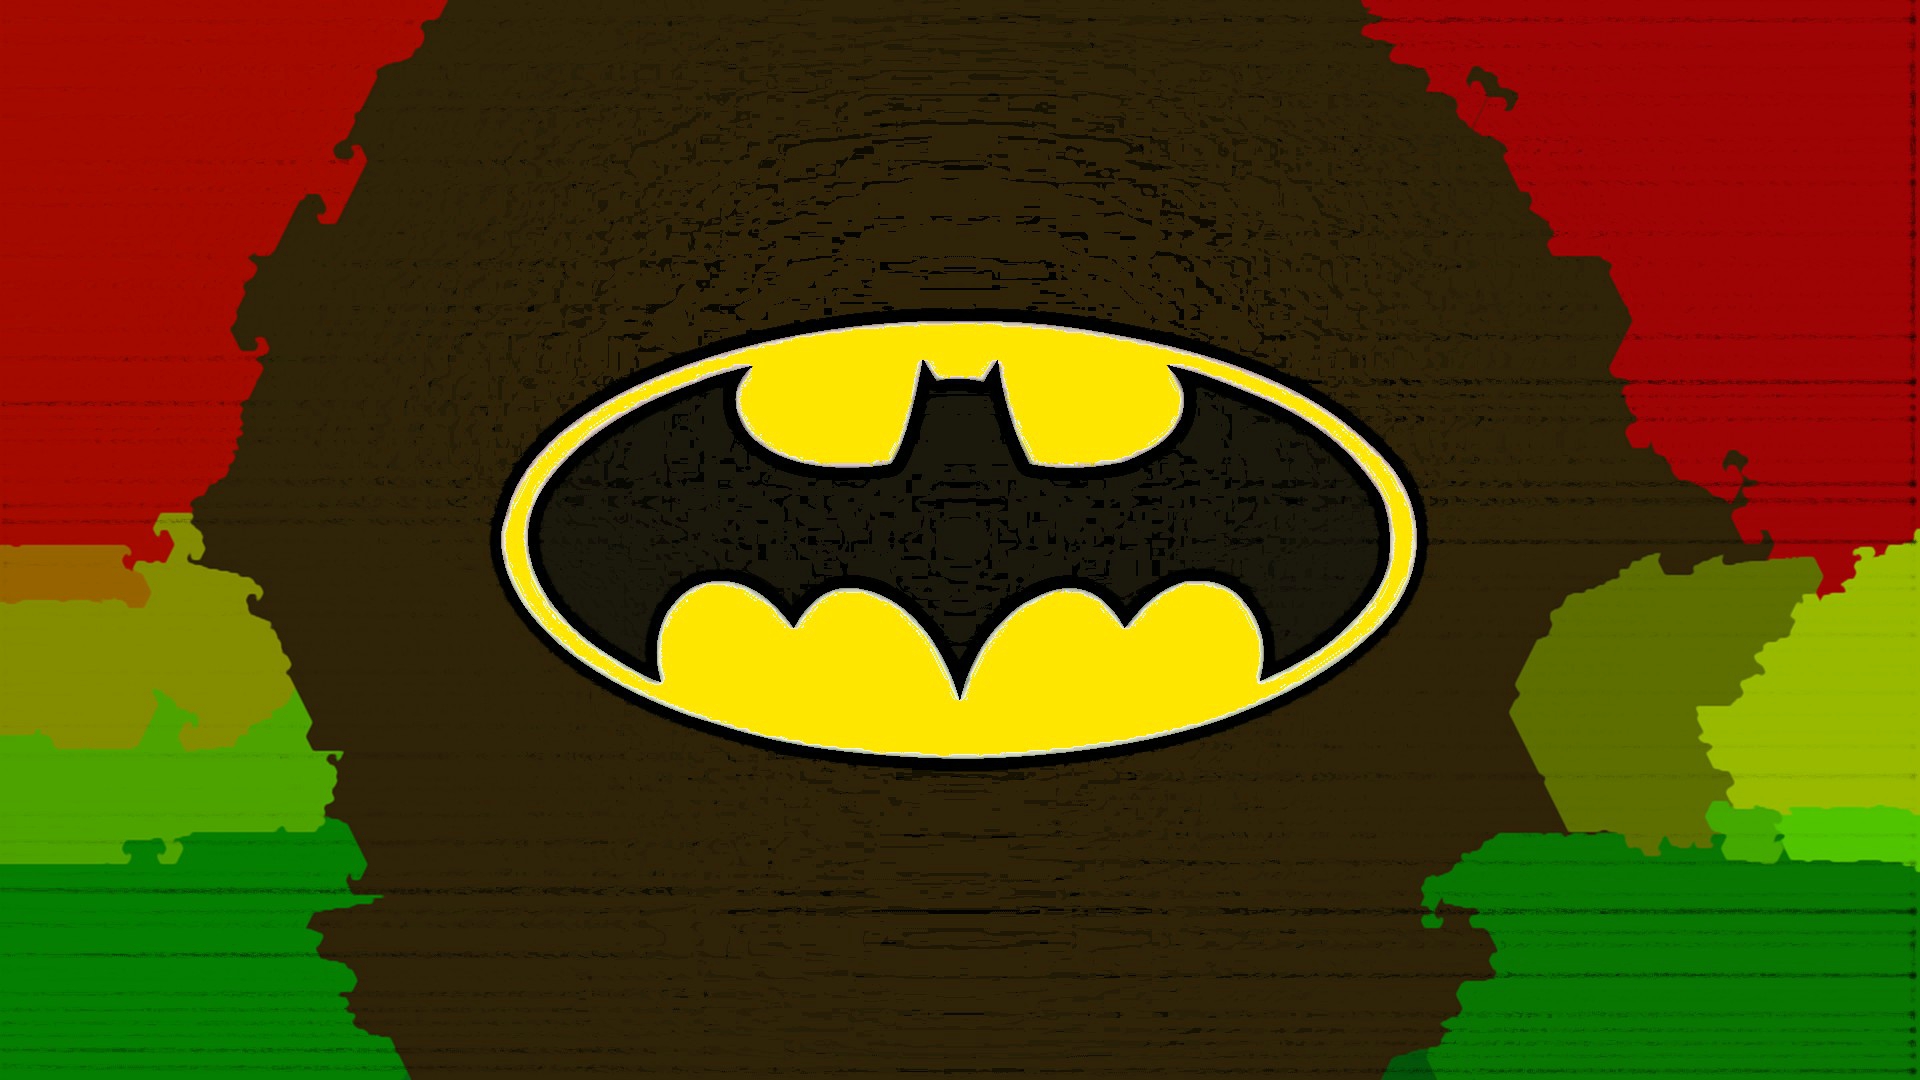 Download mobile wallpaper Batman, Comics, Batman Logo, Batman Symbol for free.